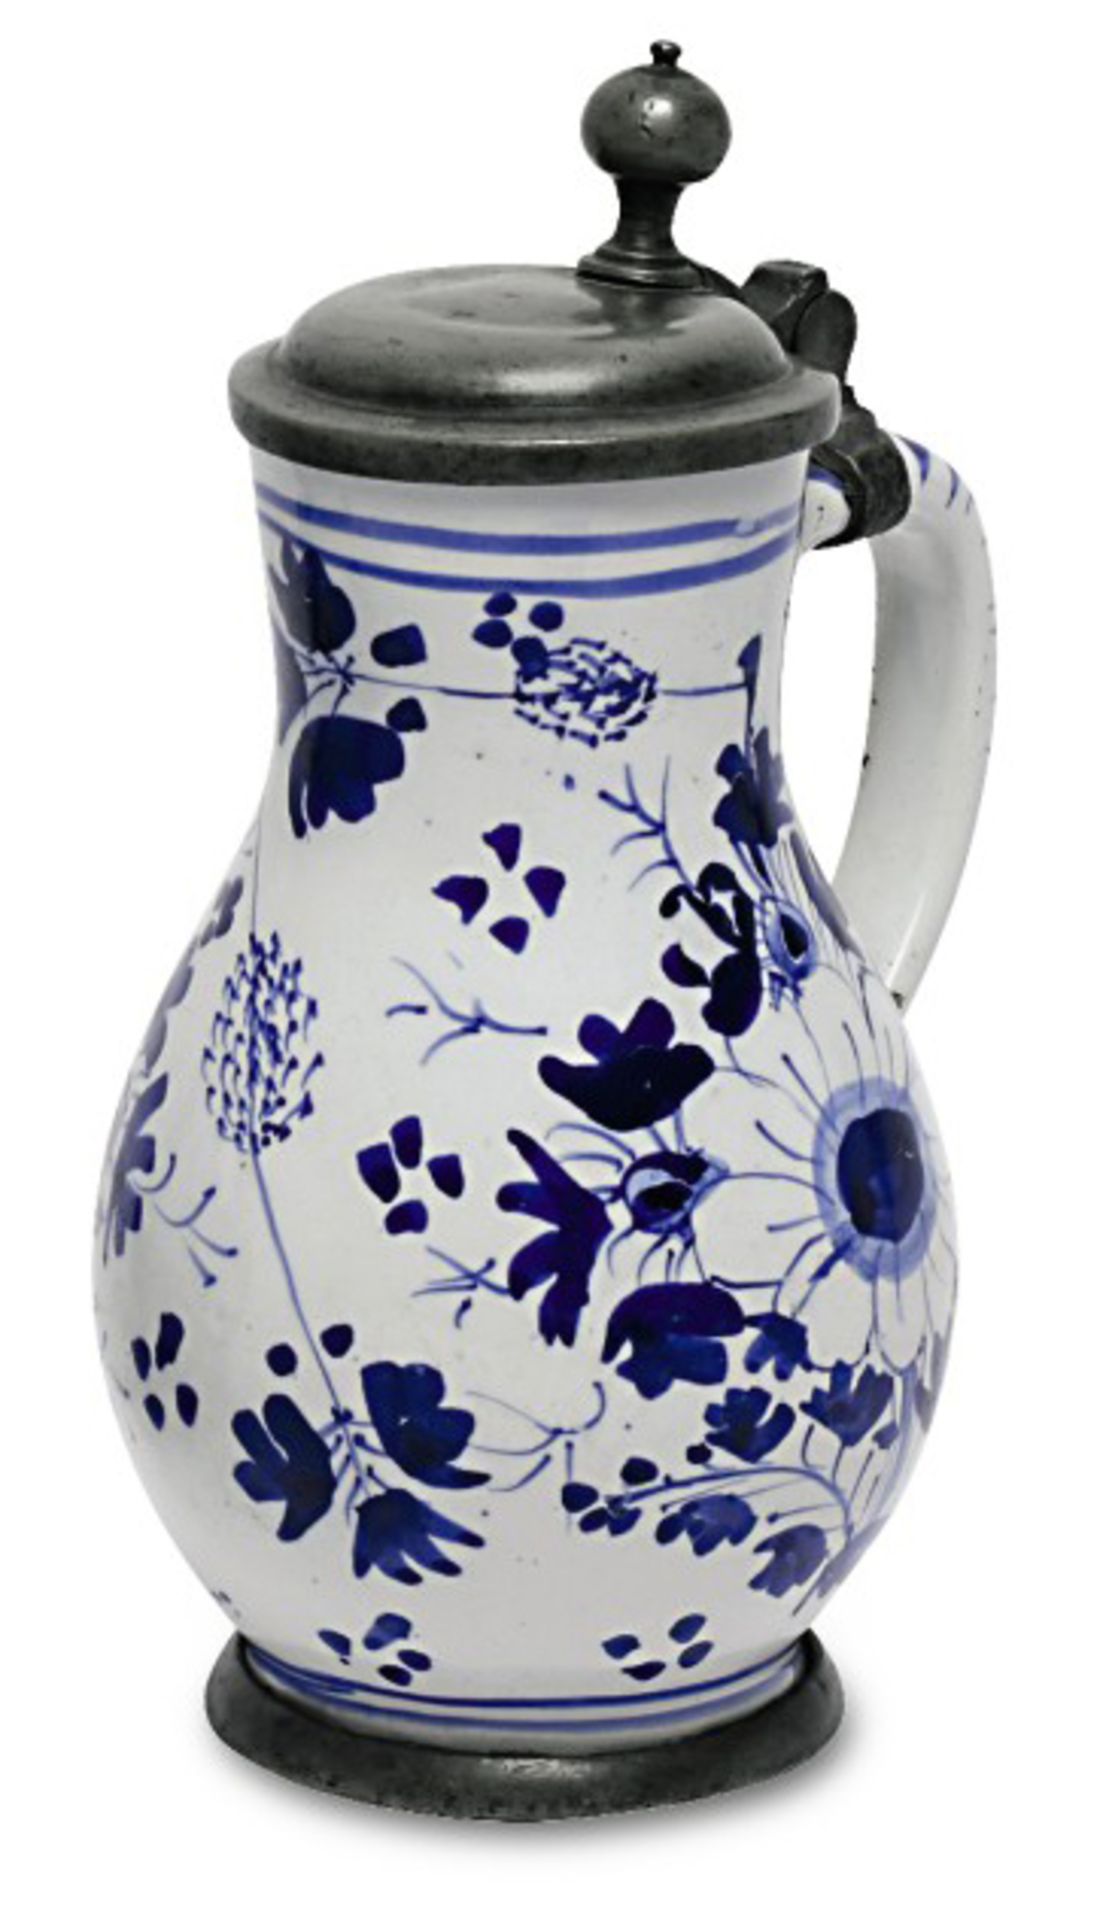 Kleiner BirnkrugHanau, 18. Jh.Fayence. Floraler Blaudekor auf weißer Glasur. Zinnmontierung.Boden